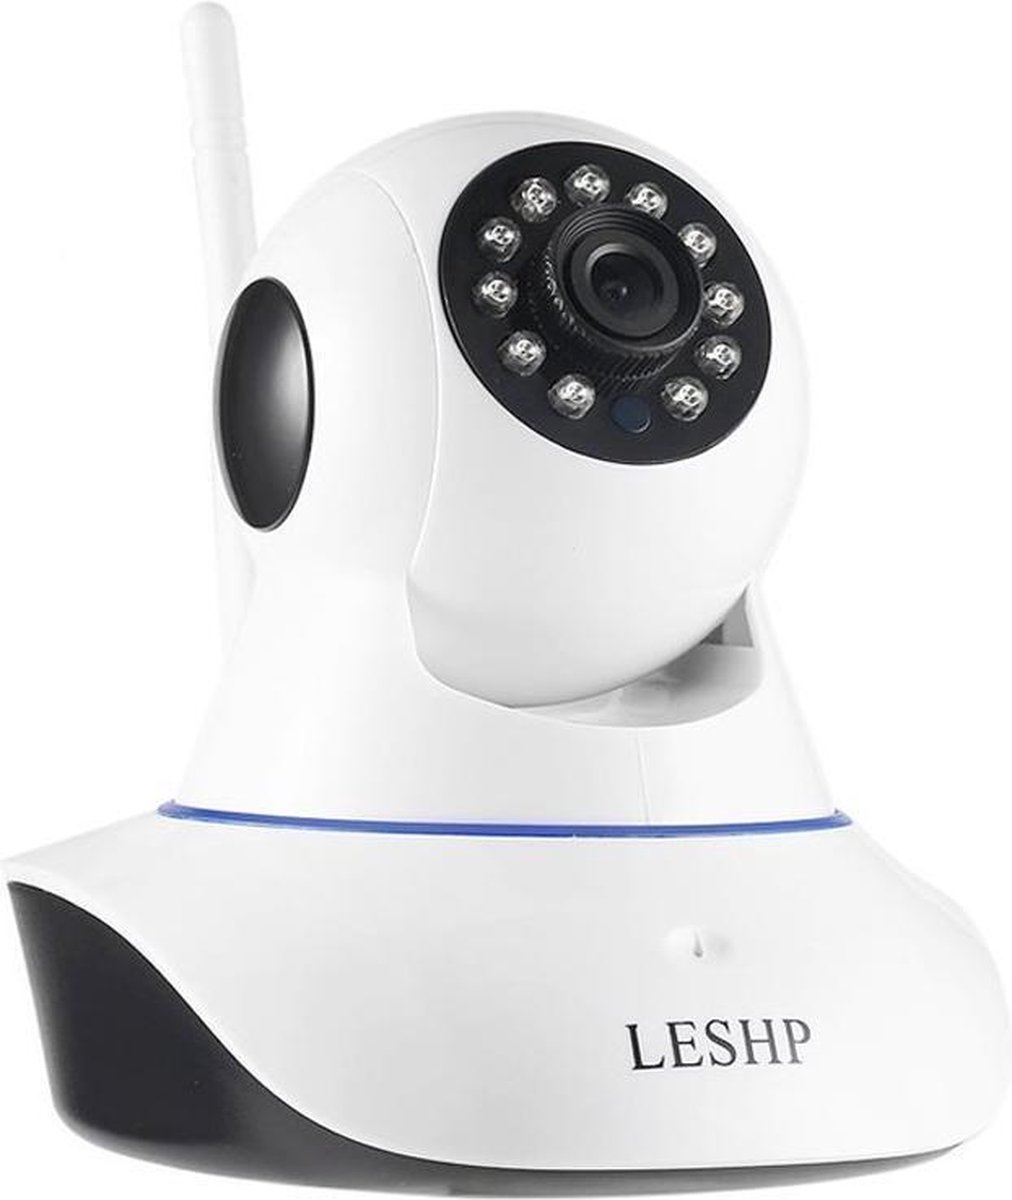 IP-camera, LESHP 1080P 2.0 MP FHD WiFi IP Cam Surveillance beveiligingssysteem Video-opname P2P Pan Tilt afstandsbediening Bewegingsdetectie Alarm Nachtzicht met tweeweg audio-ondersteuning 64 GB SD